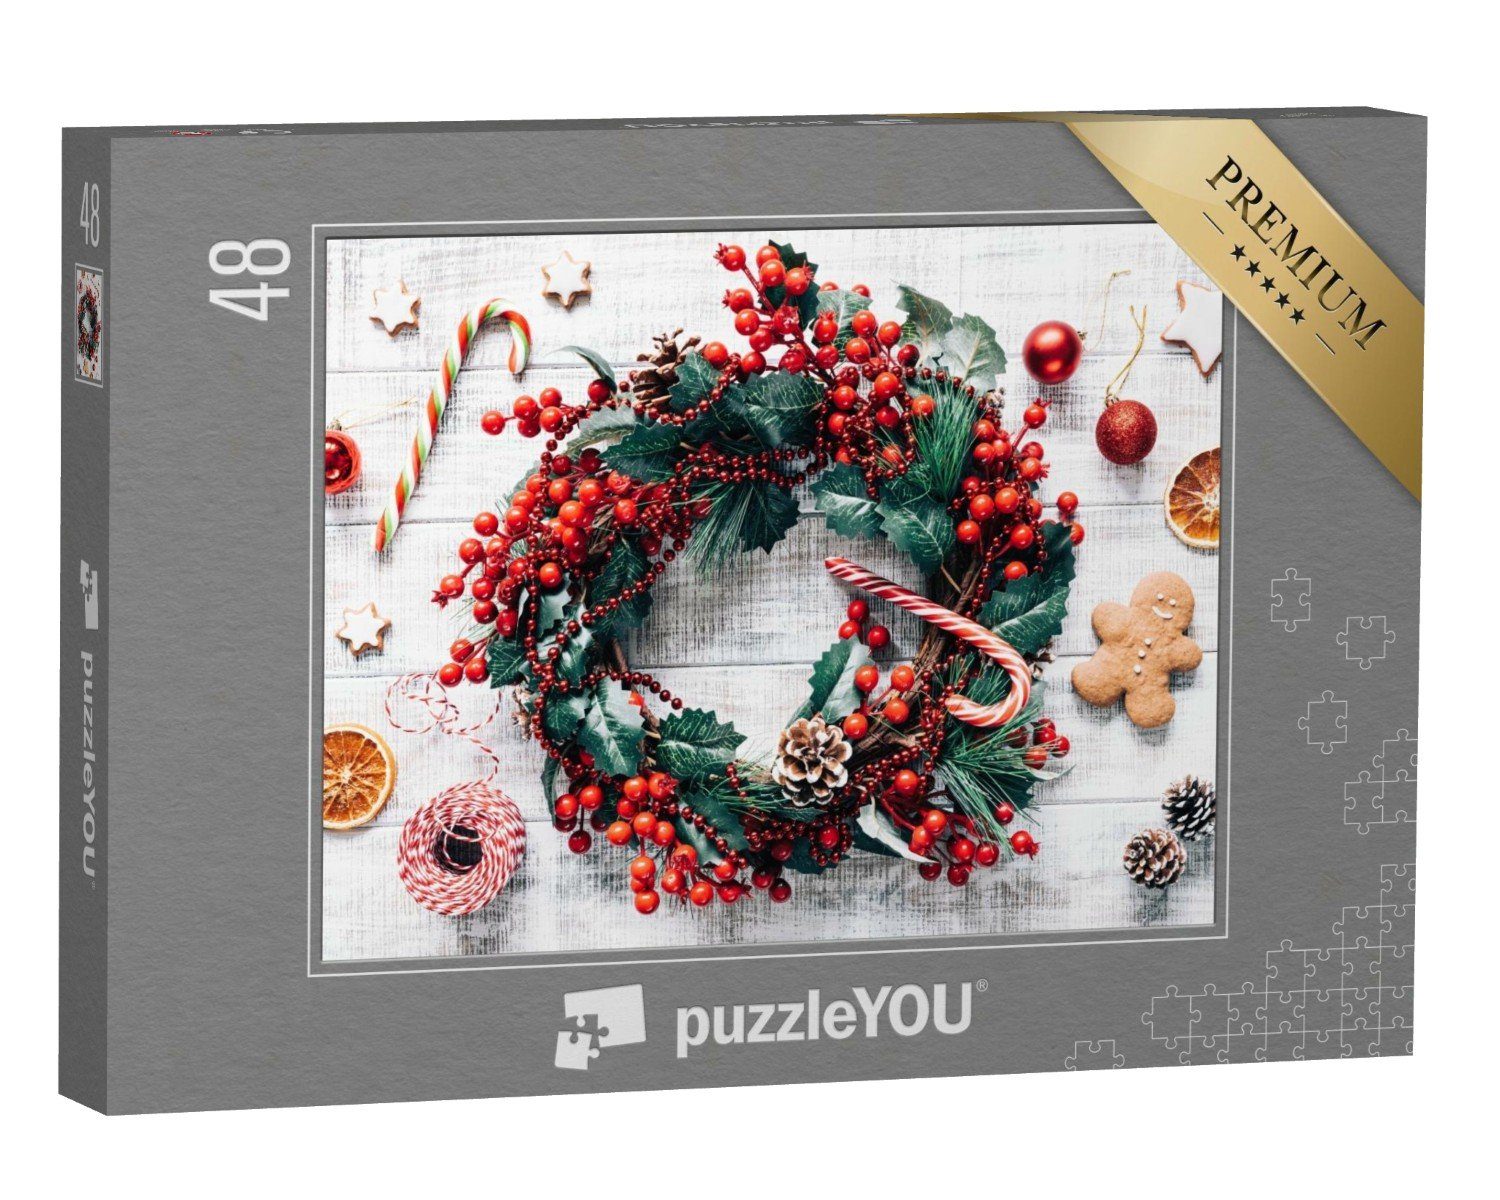 puzzleYOU Puzzle Weihnachten: und Puzzleteile, 48 Lebkuchen, Weihnachtsbaumschmuck puzzleYOU-Kollektionen Weihnachten